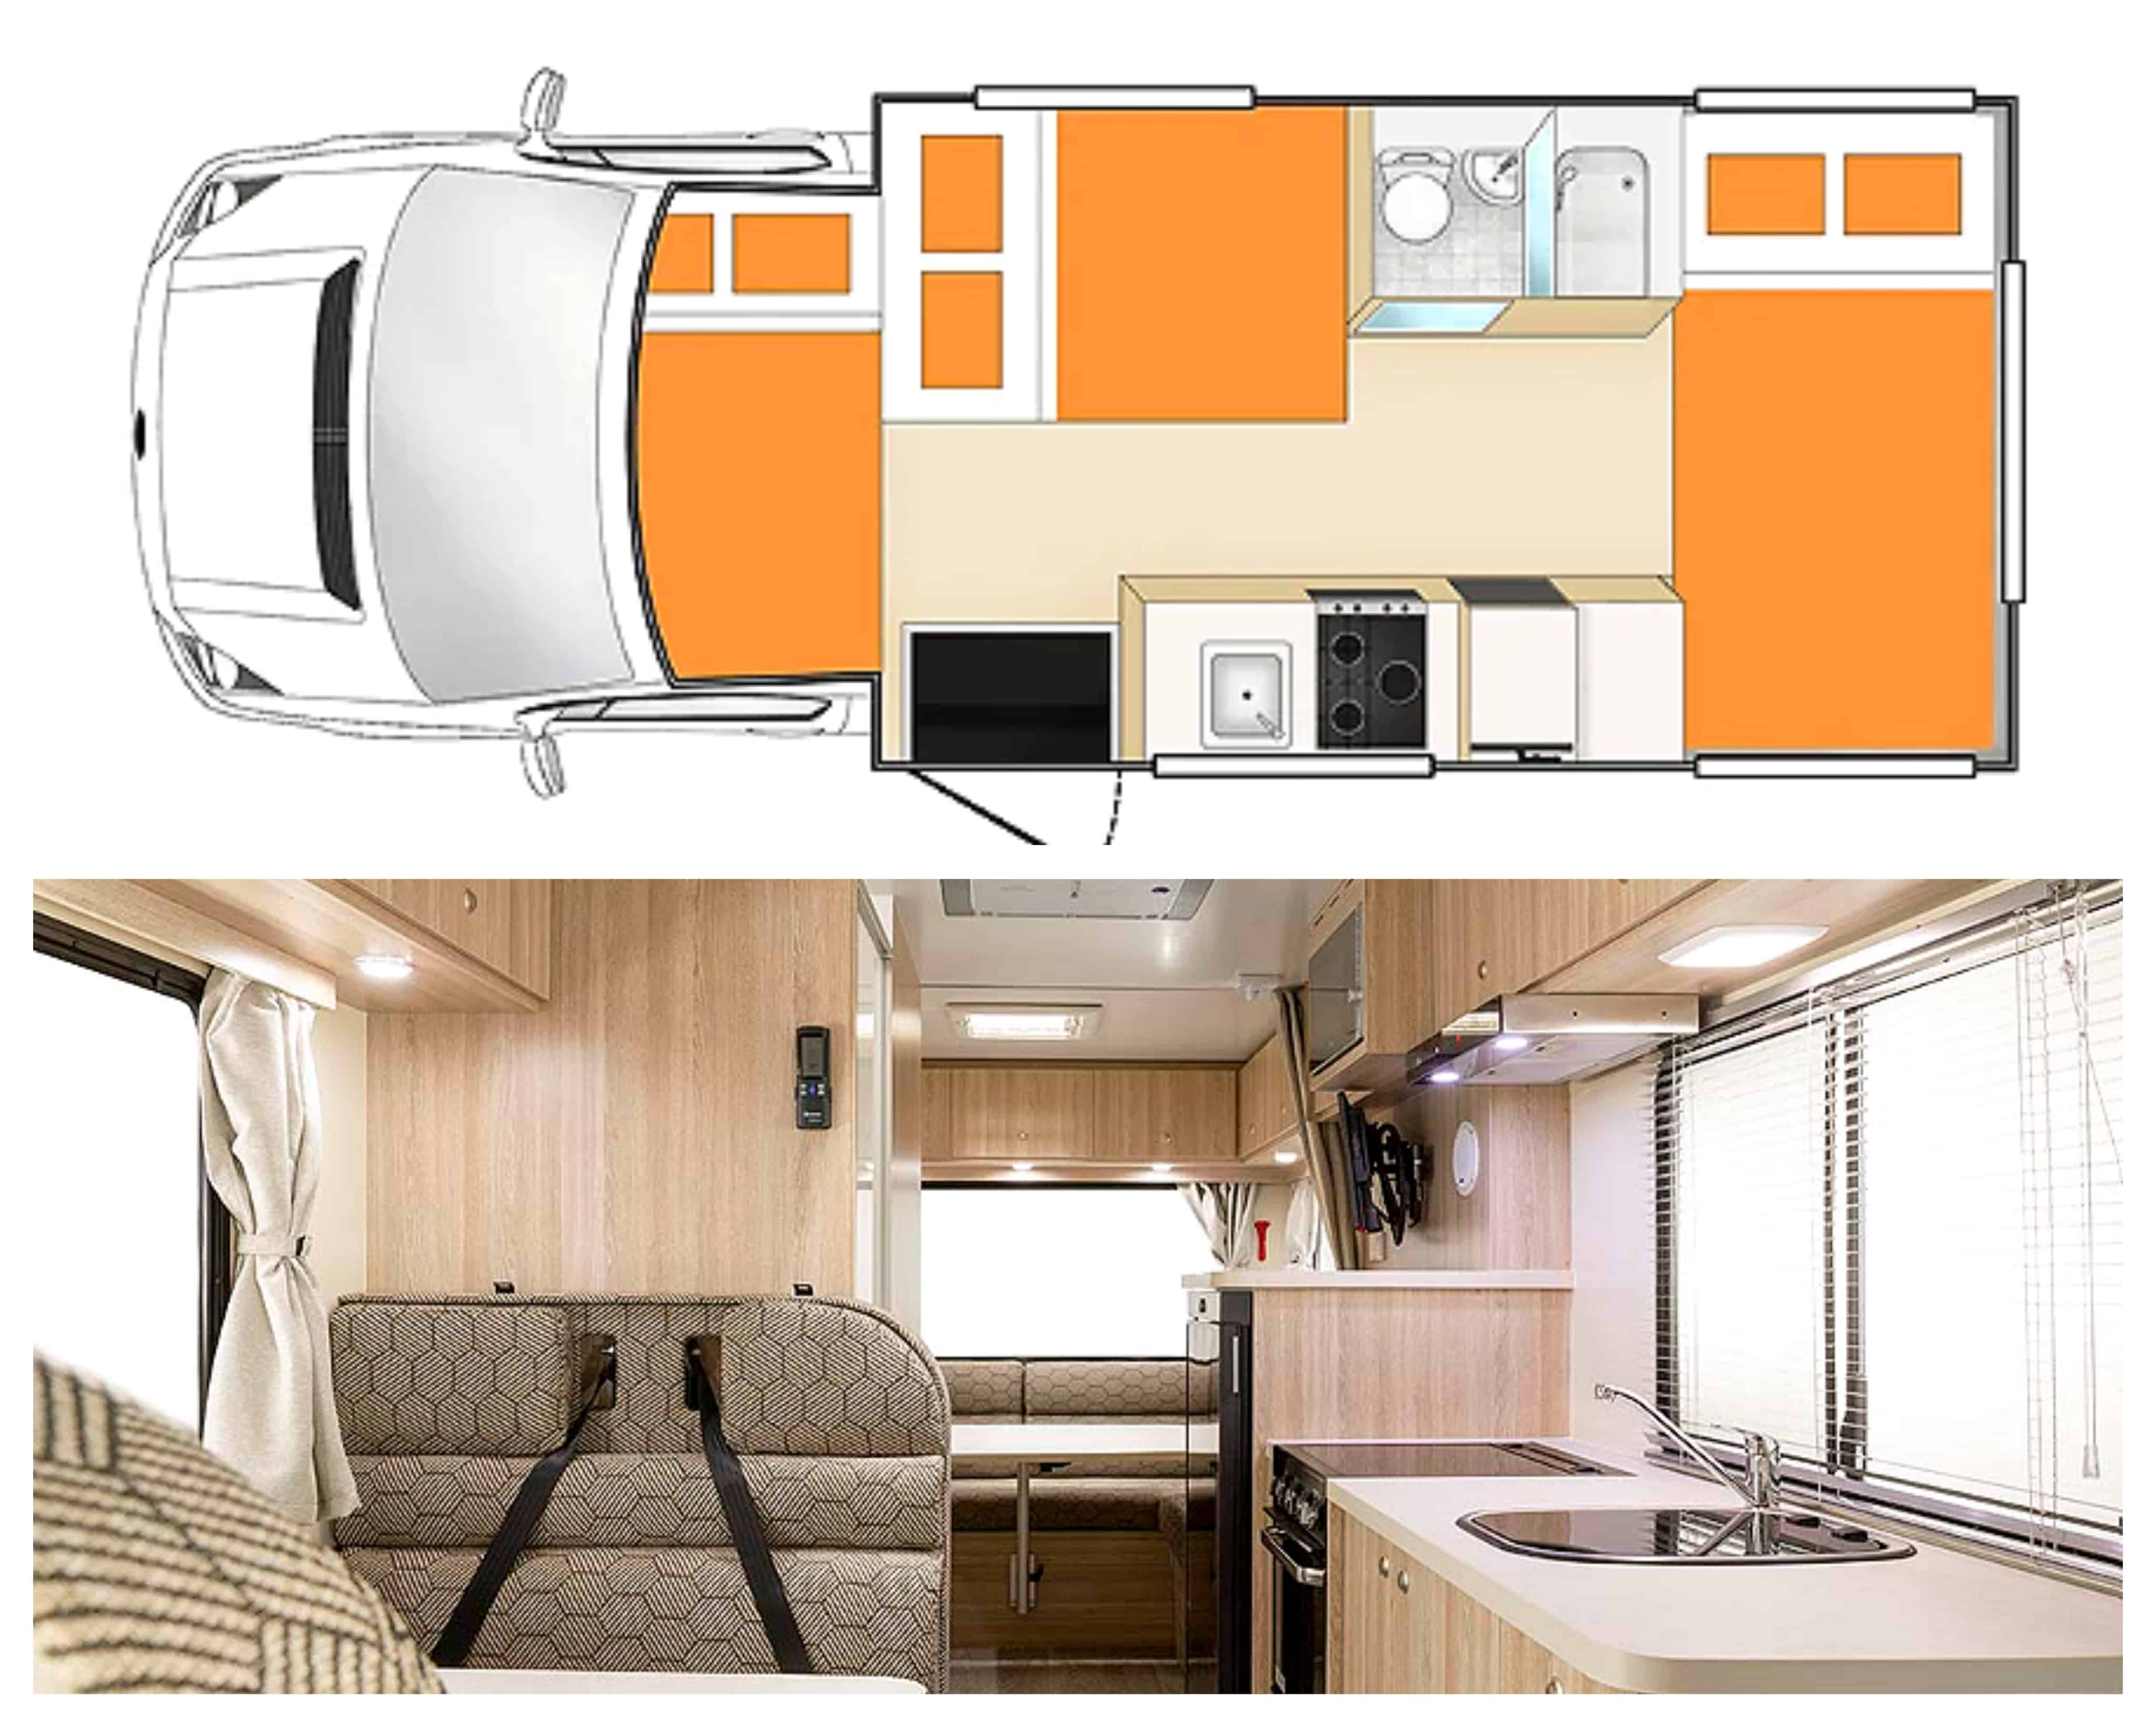 Plan et photo intérieur camping-car modèle Apollo Euro Deluxe en Australie